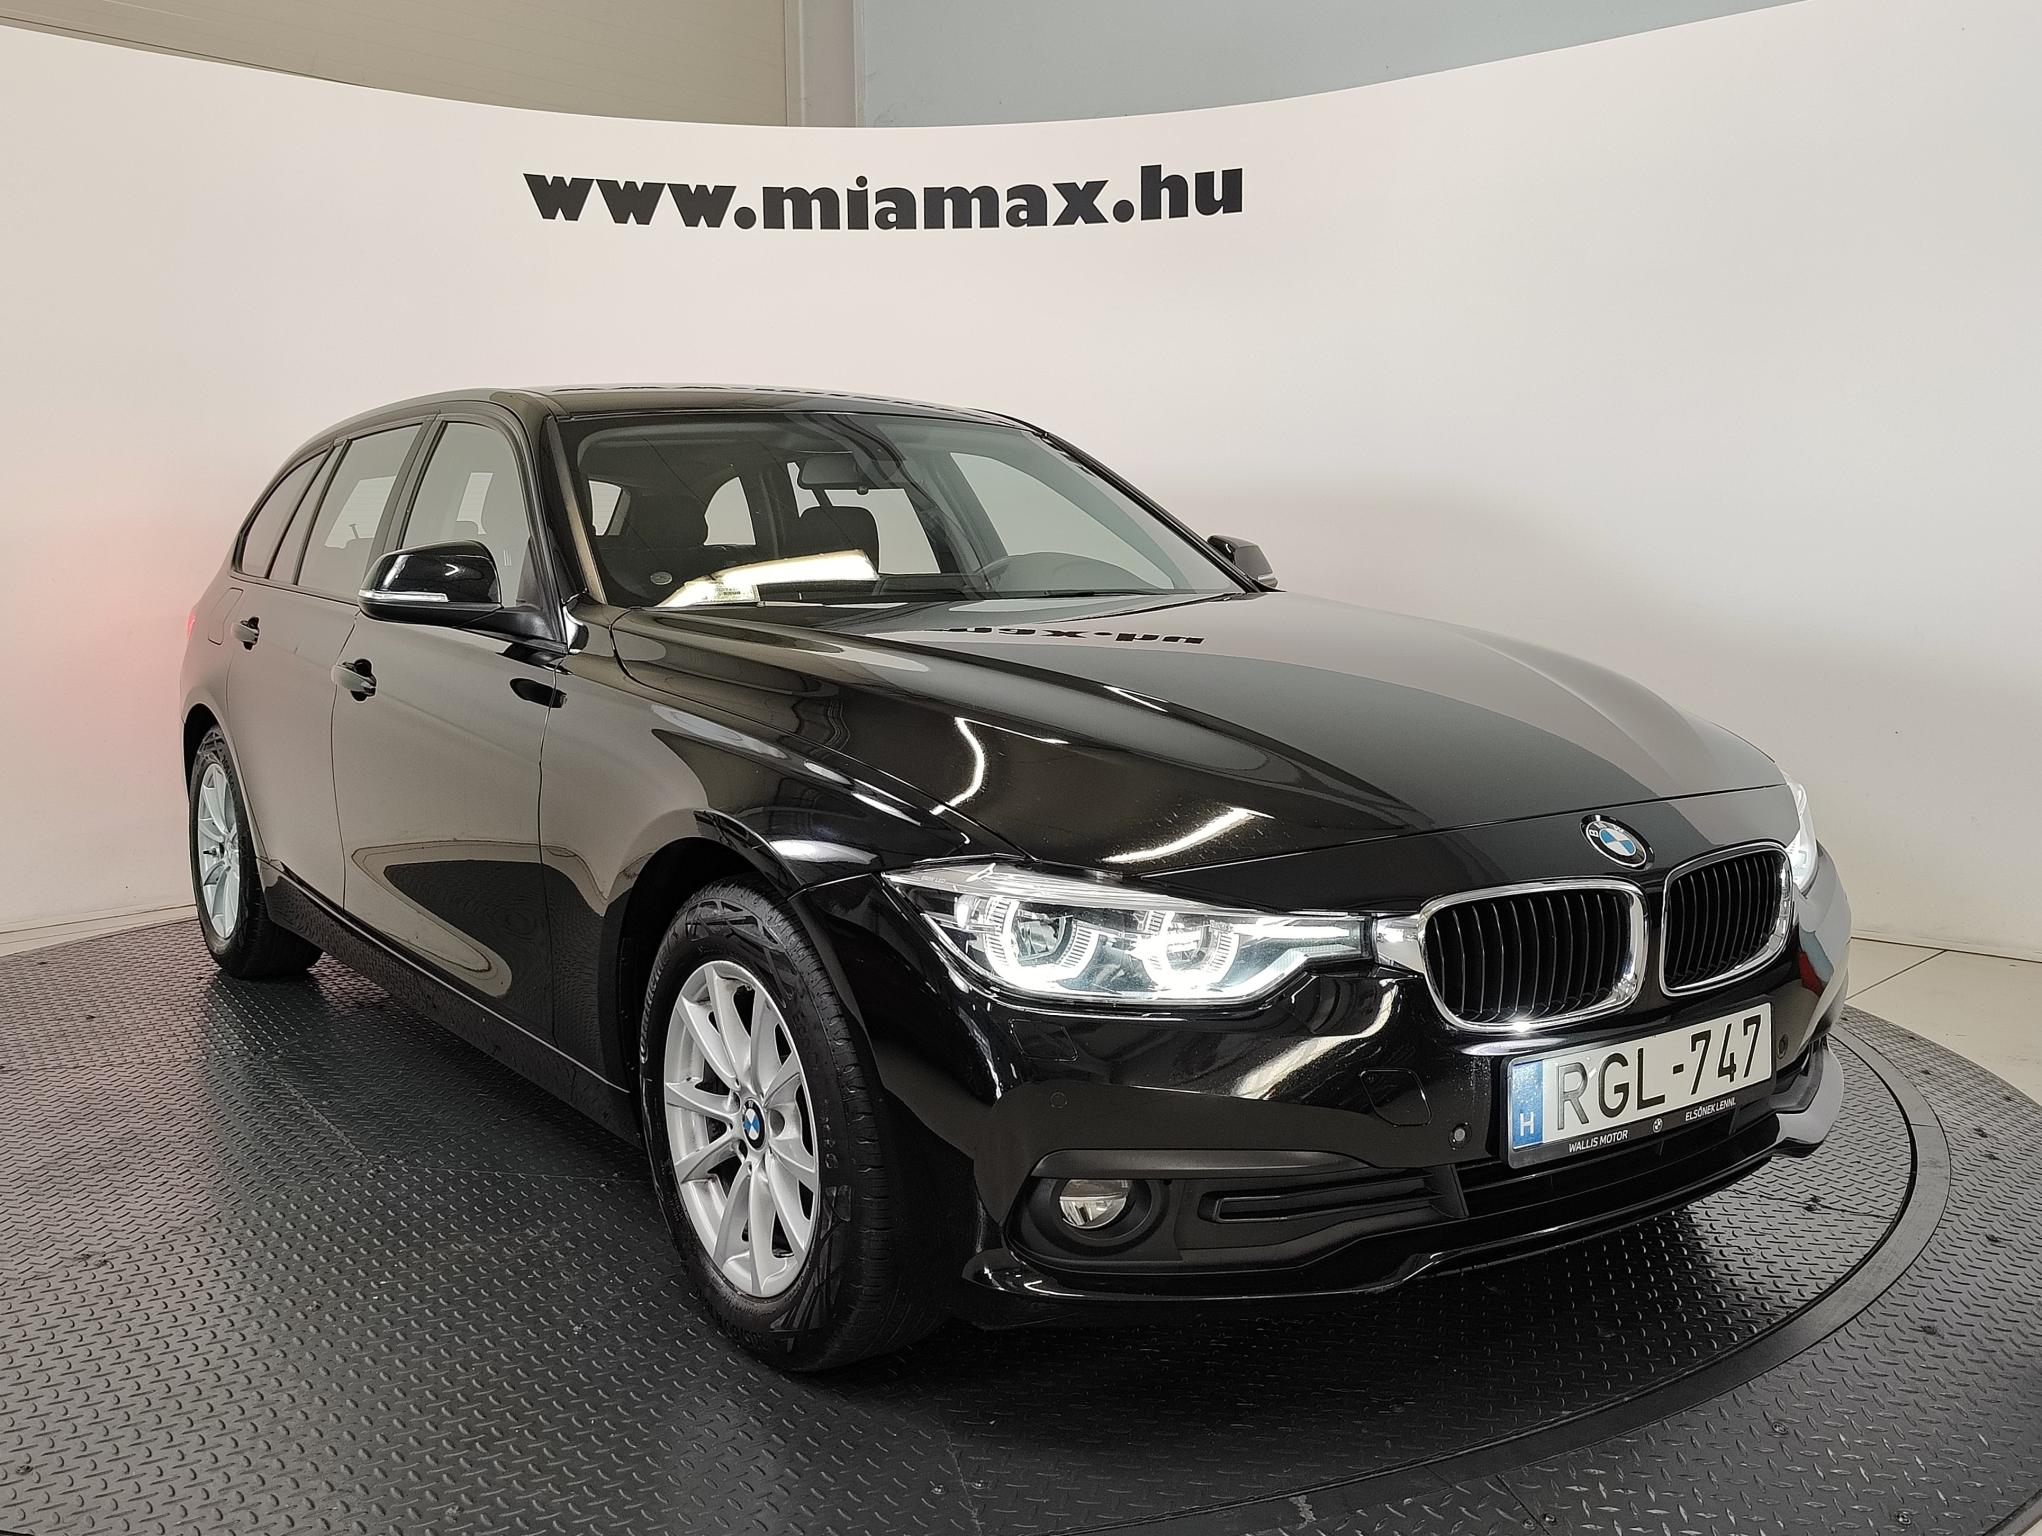 BMW 320d Advantage (Automata) 104.582 km! magyar. 1 tulaj. végig márkaszervizben szervizelt. kitűnő állapotban